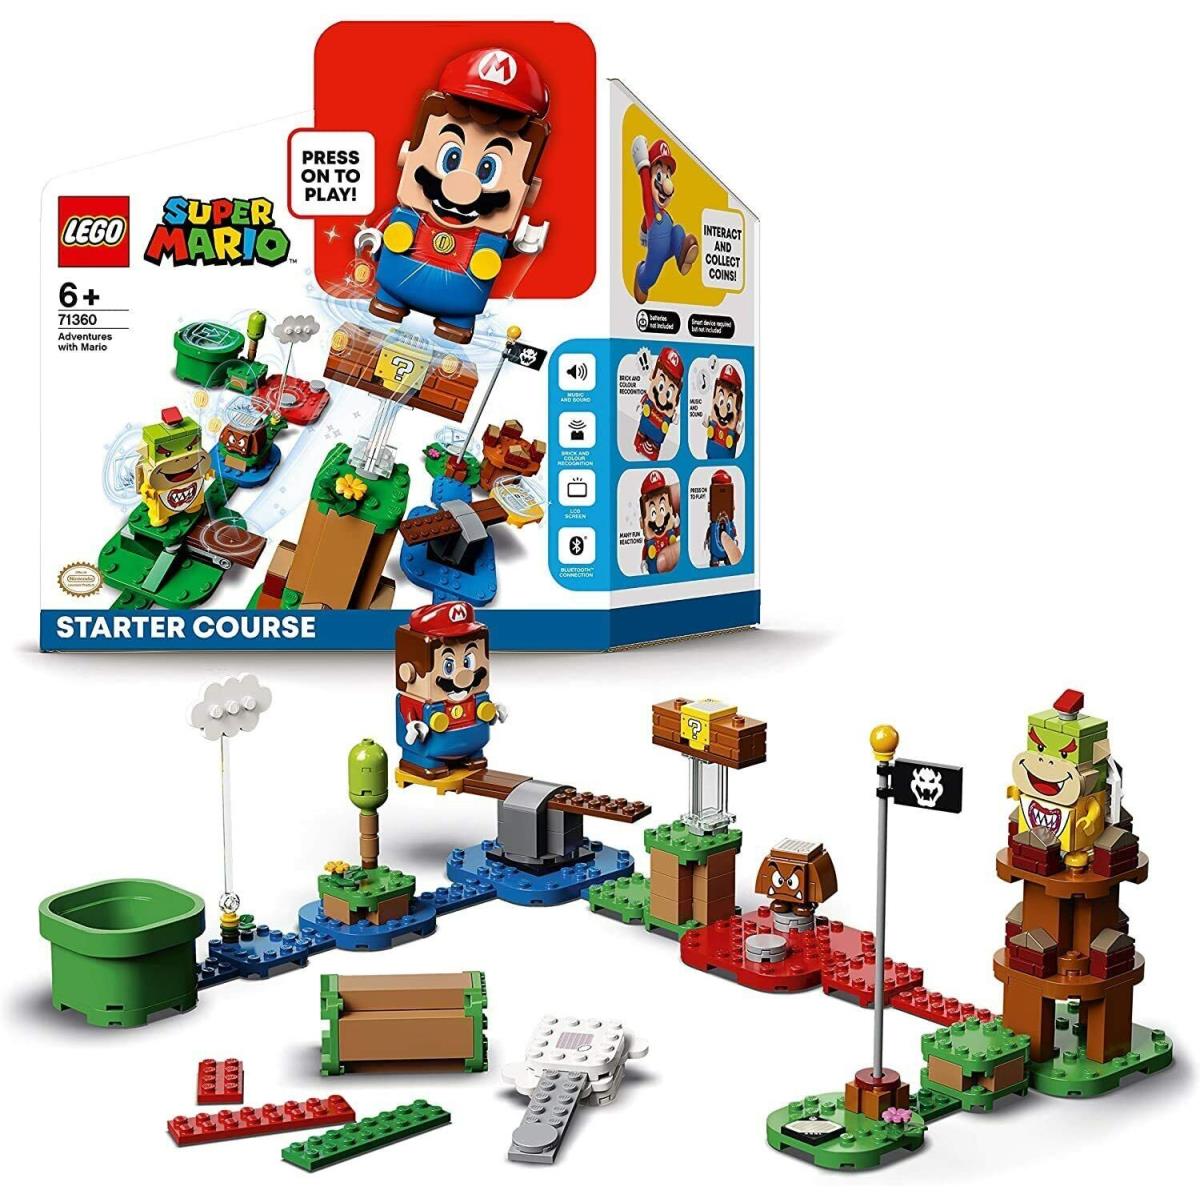 Lego Super Mario - Adventures with Mario Starter Course 71360